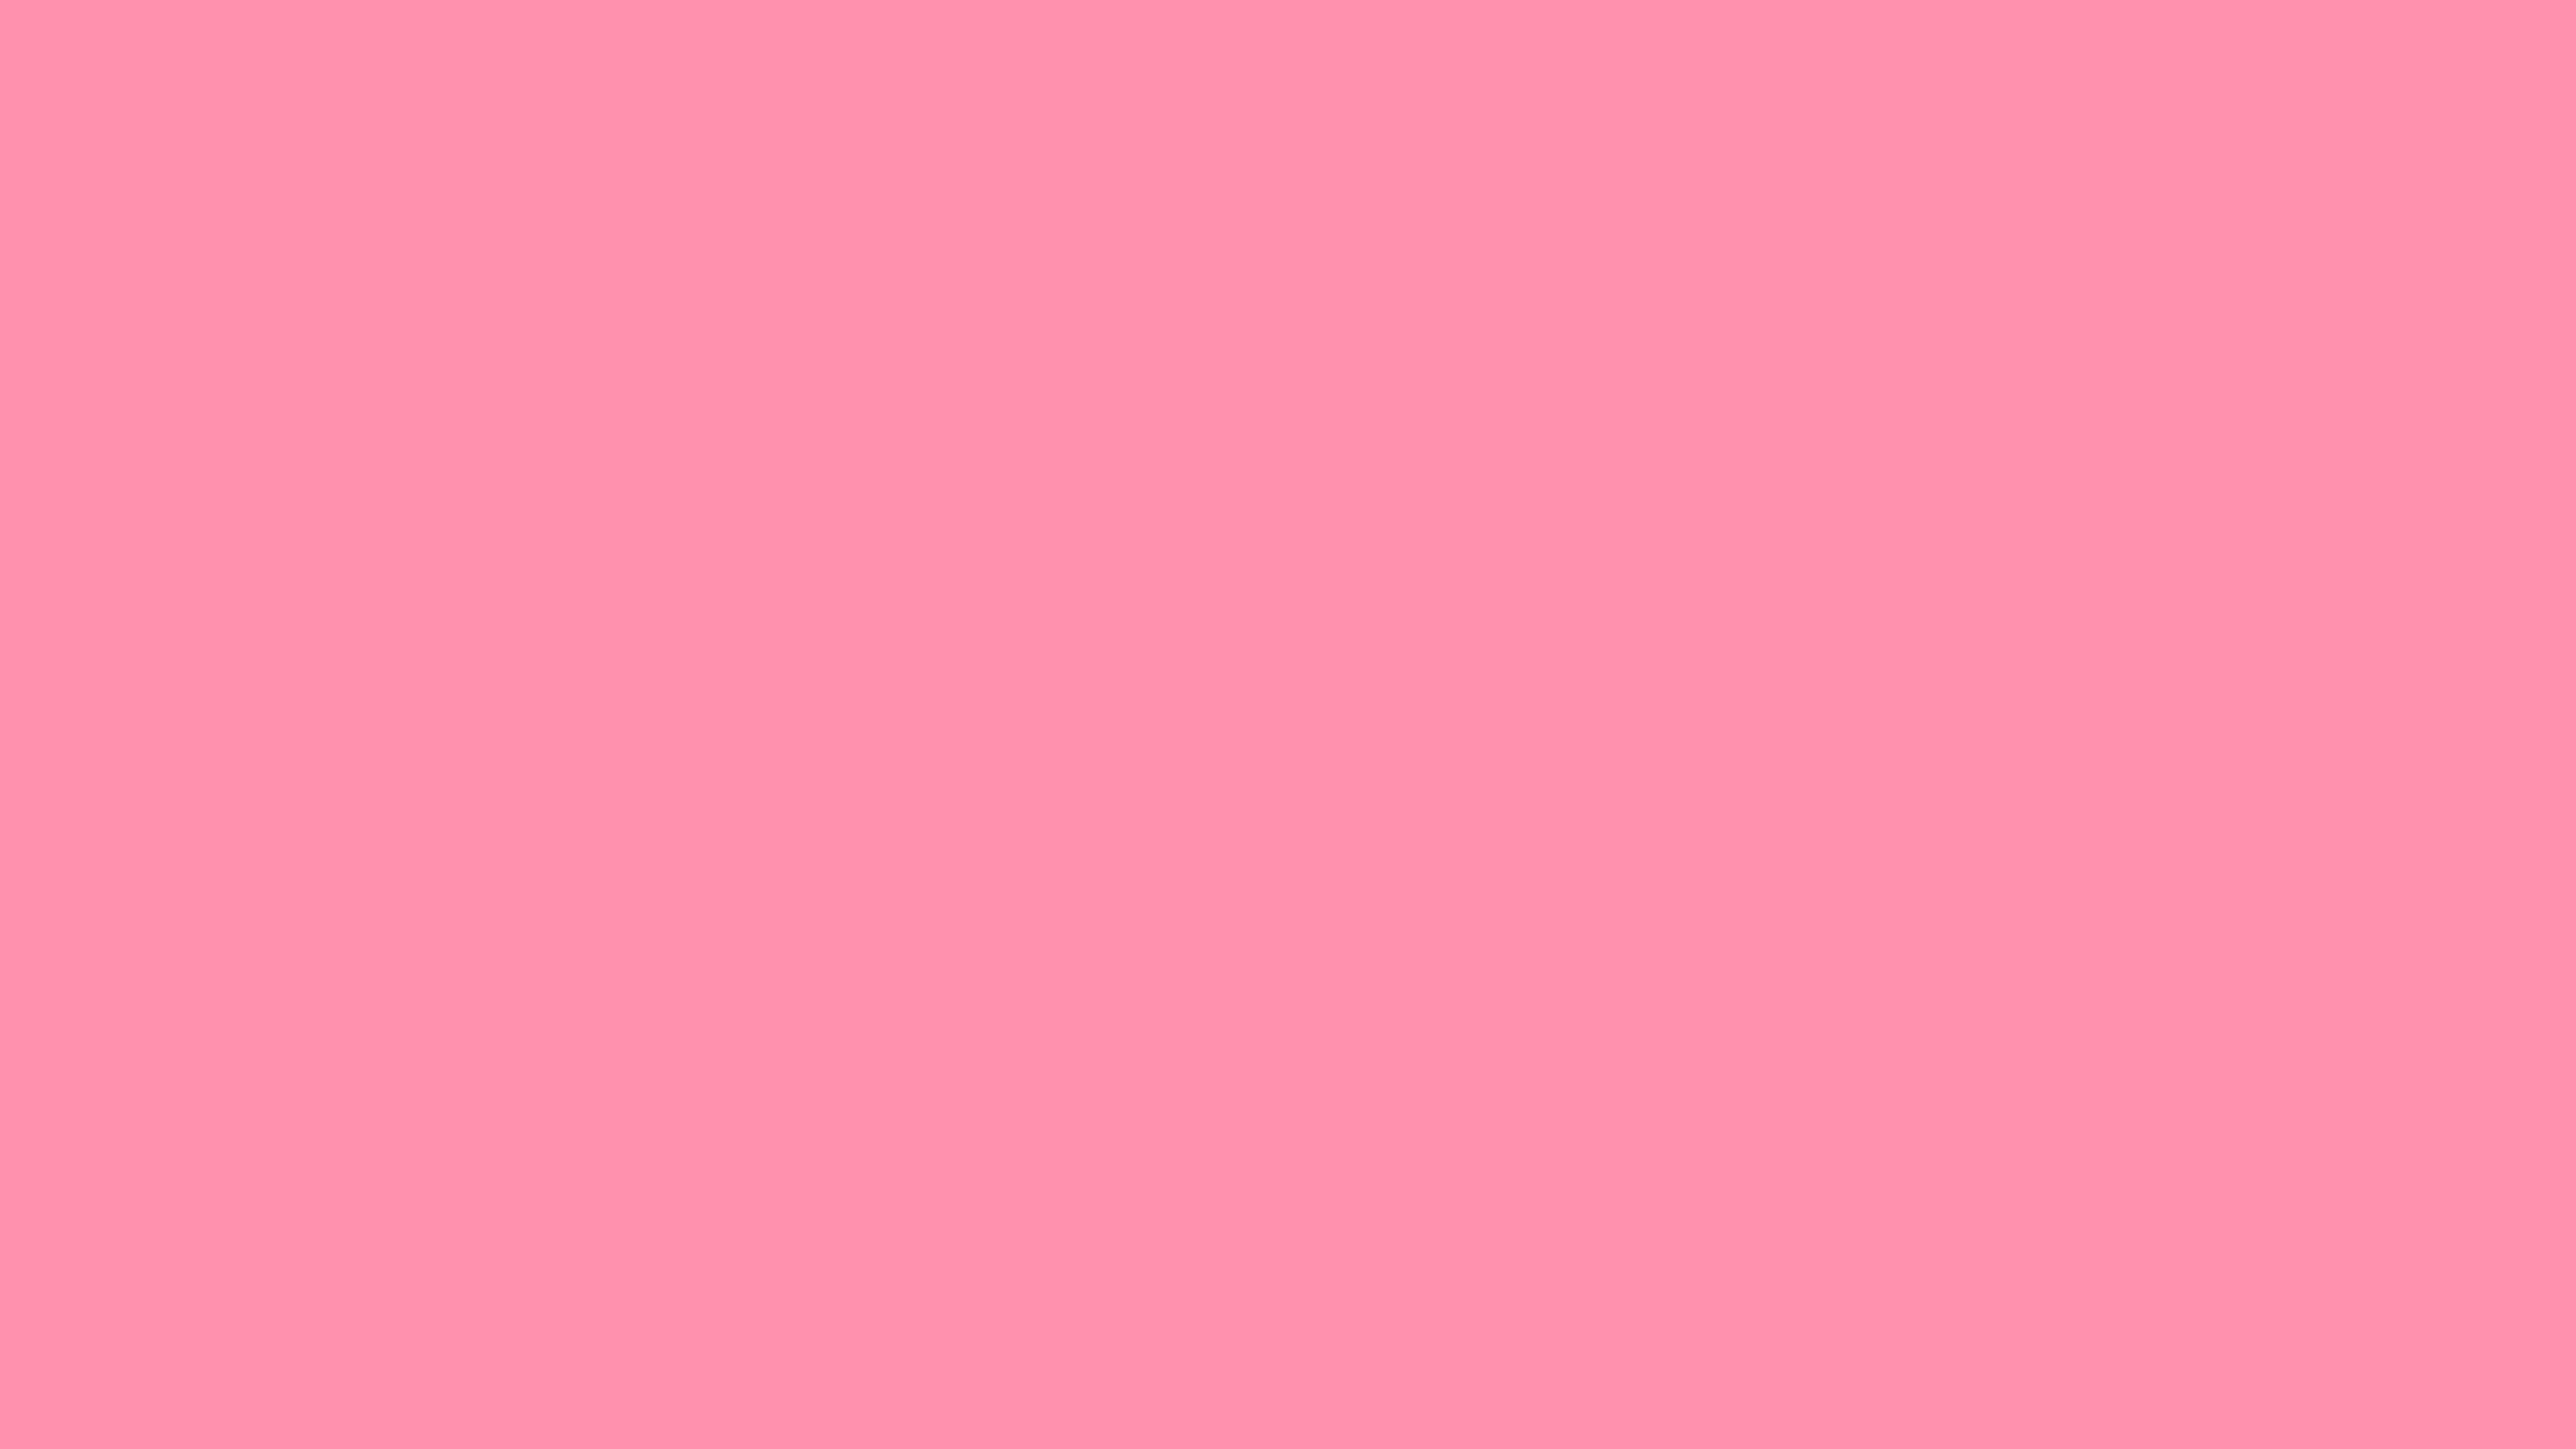 7680x4320 Baker-Miller Pink Solid Color Background